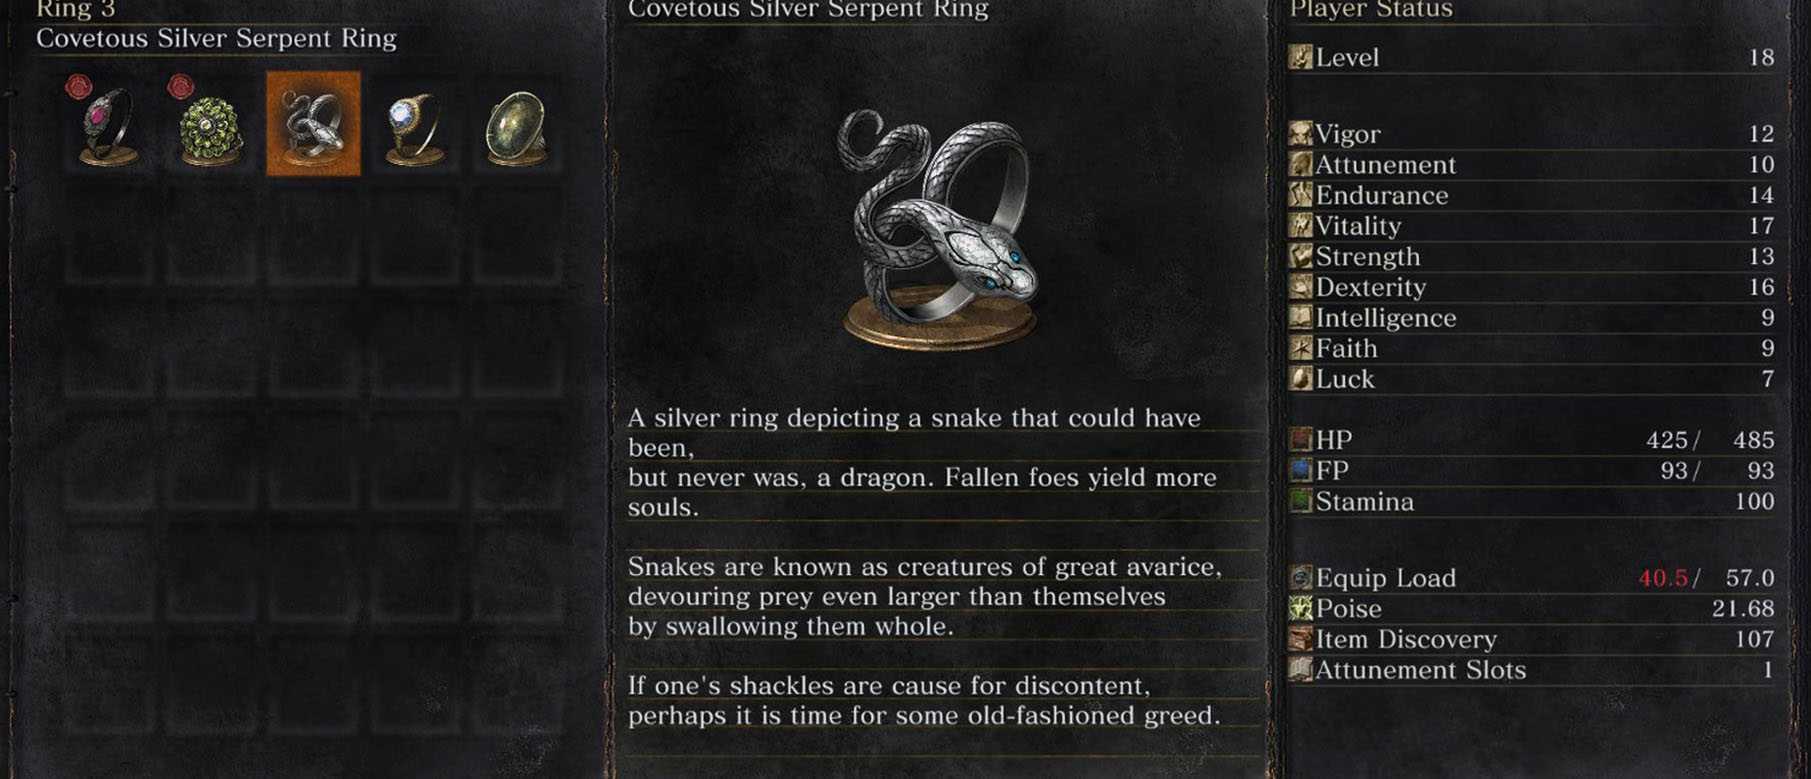 Кольцо золотого змея dark souls. Dark Souls кольцо жадного змея серебряное. Кольцо жадного змея Dark Souls 3. Серебряное кольцо жадного змея Dark Souls 3. Дарк соулс 1 кольцо с серебряным змеем.